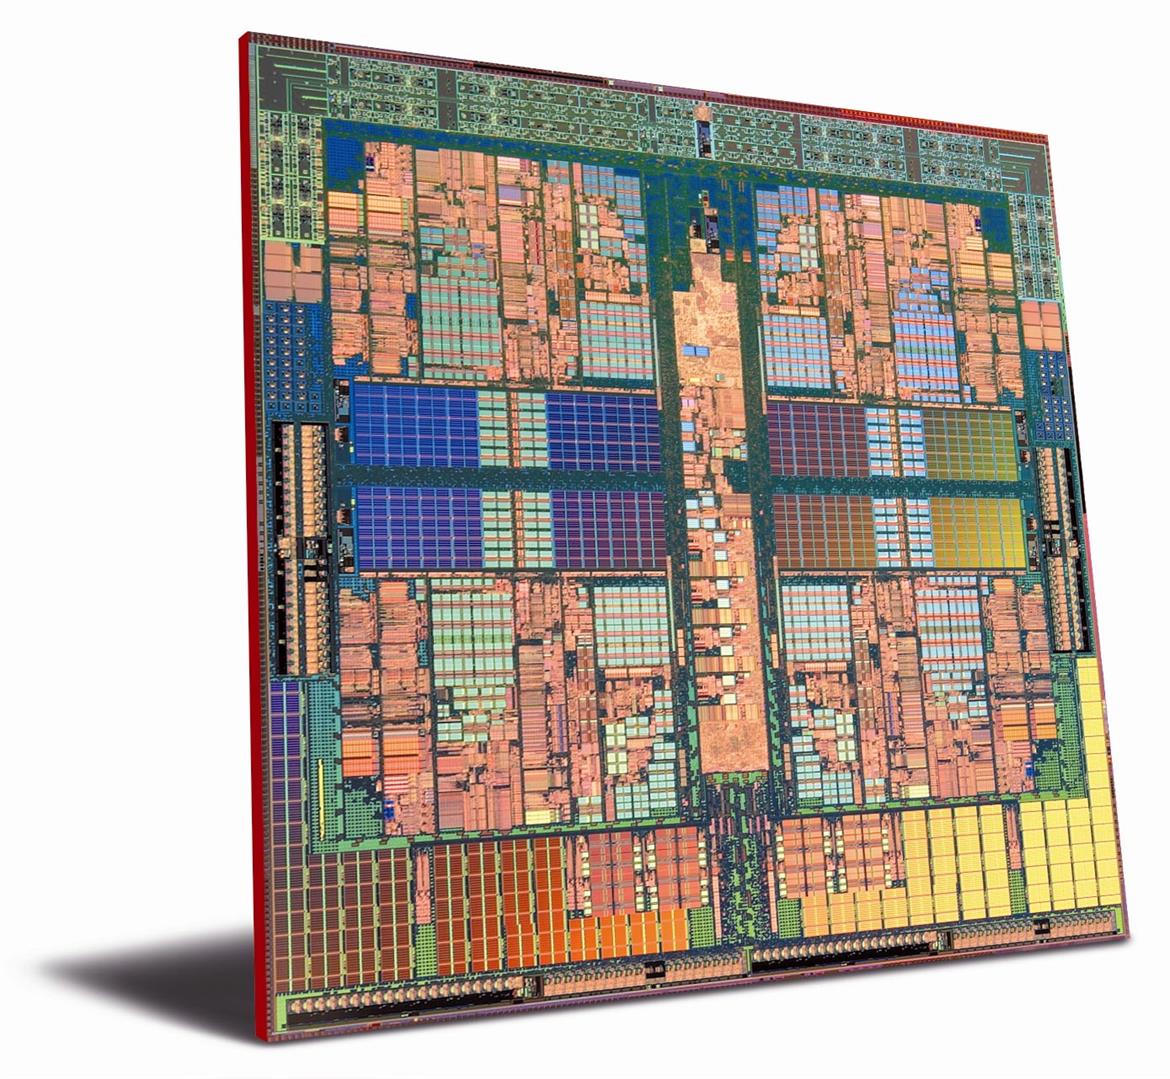 AMD Barcelona Architecture Launch: Native Quad-Core